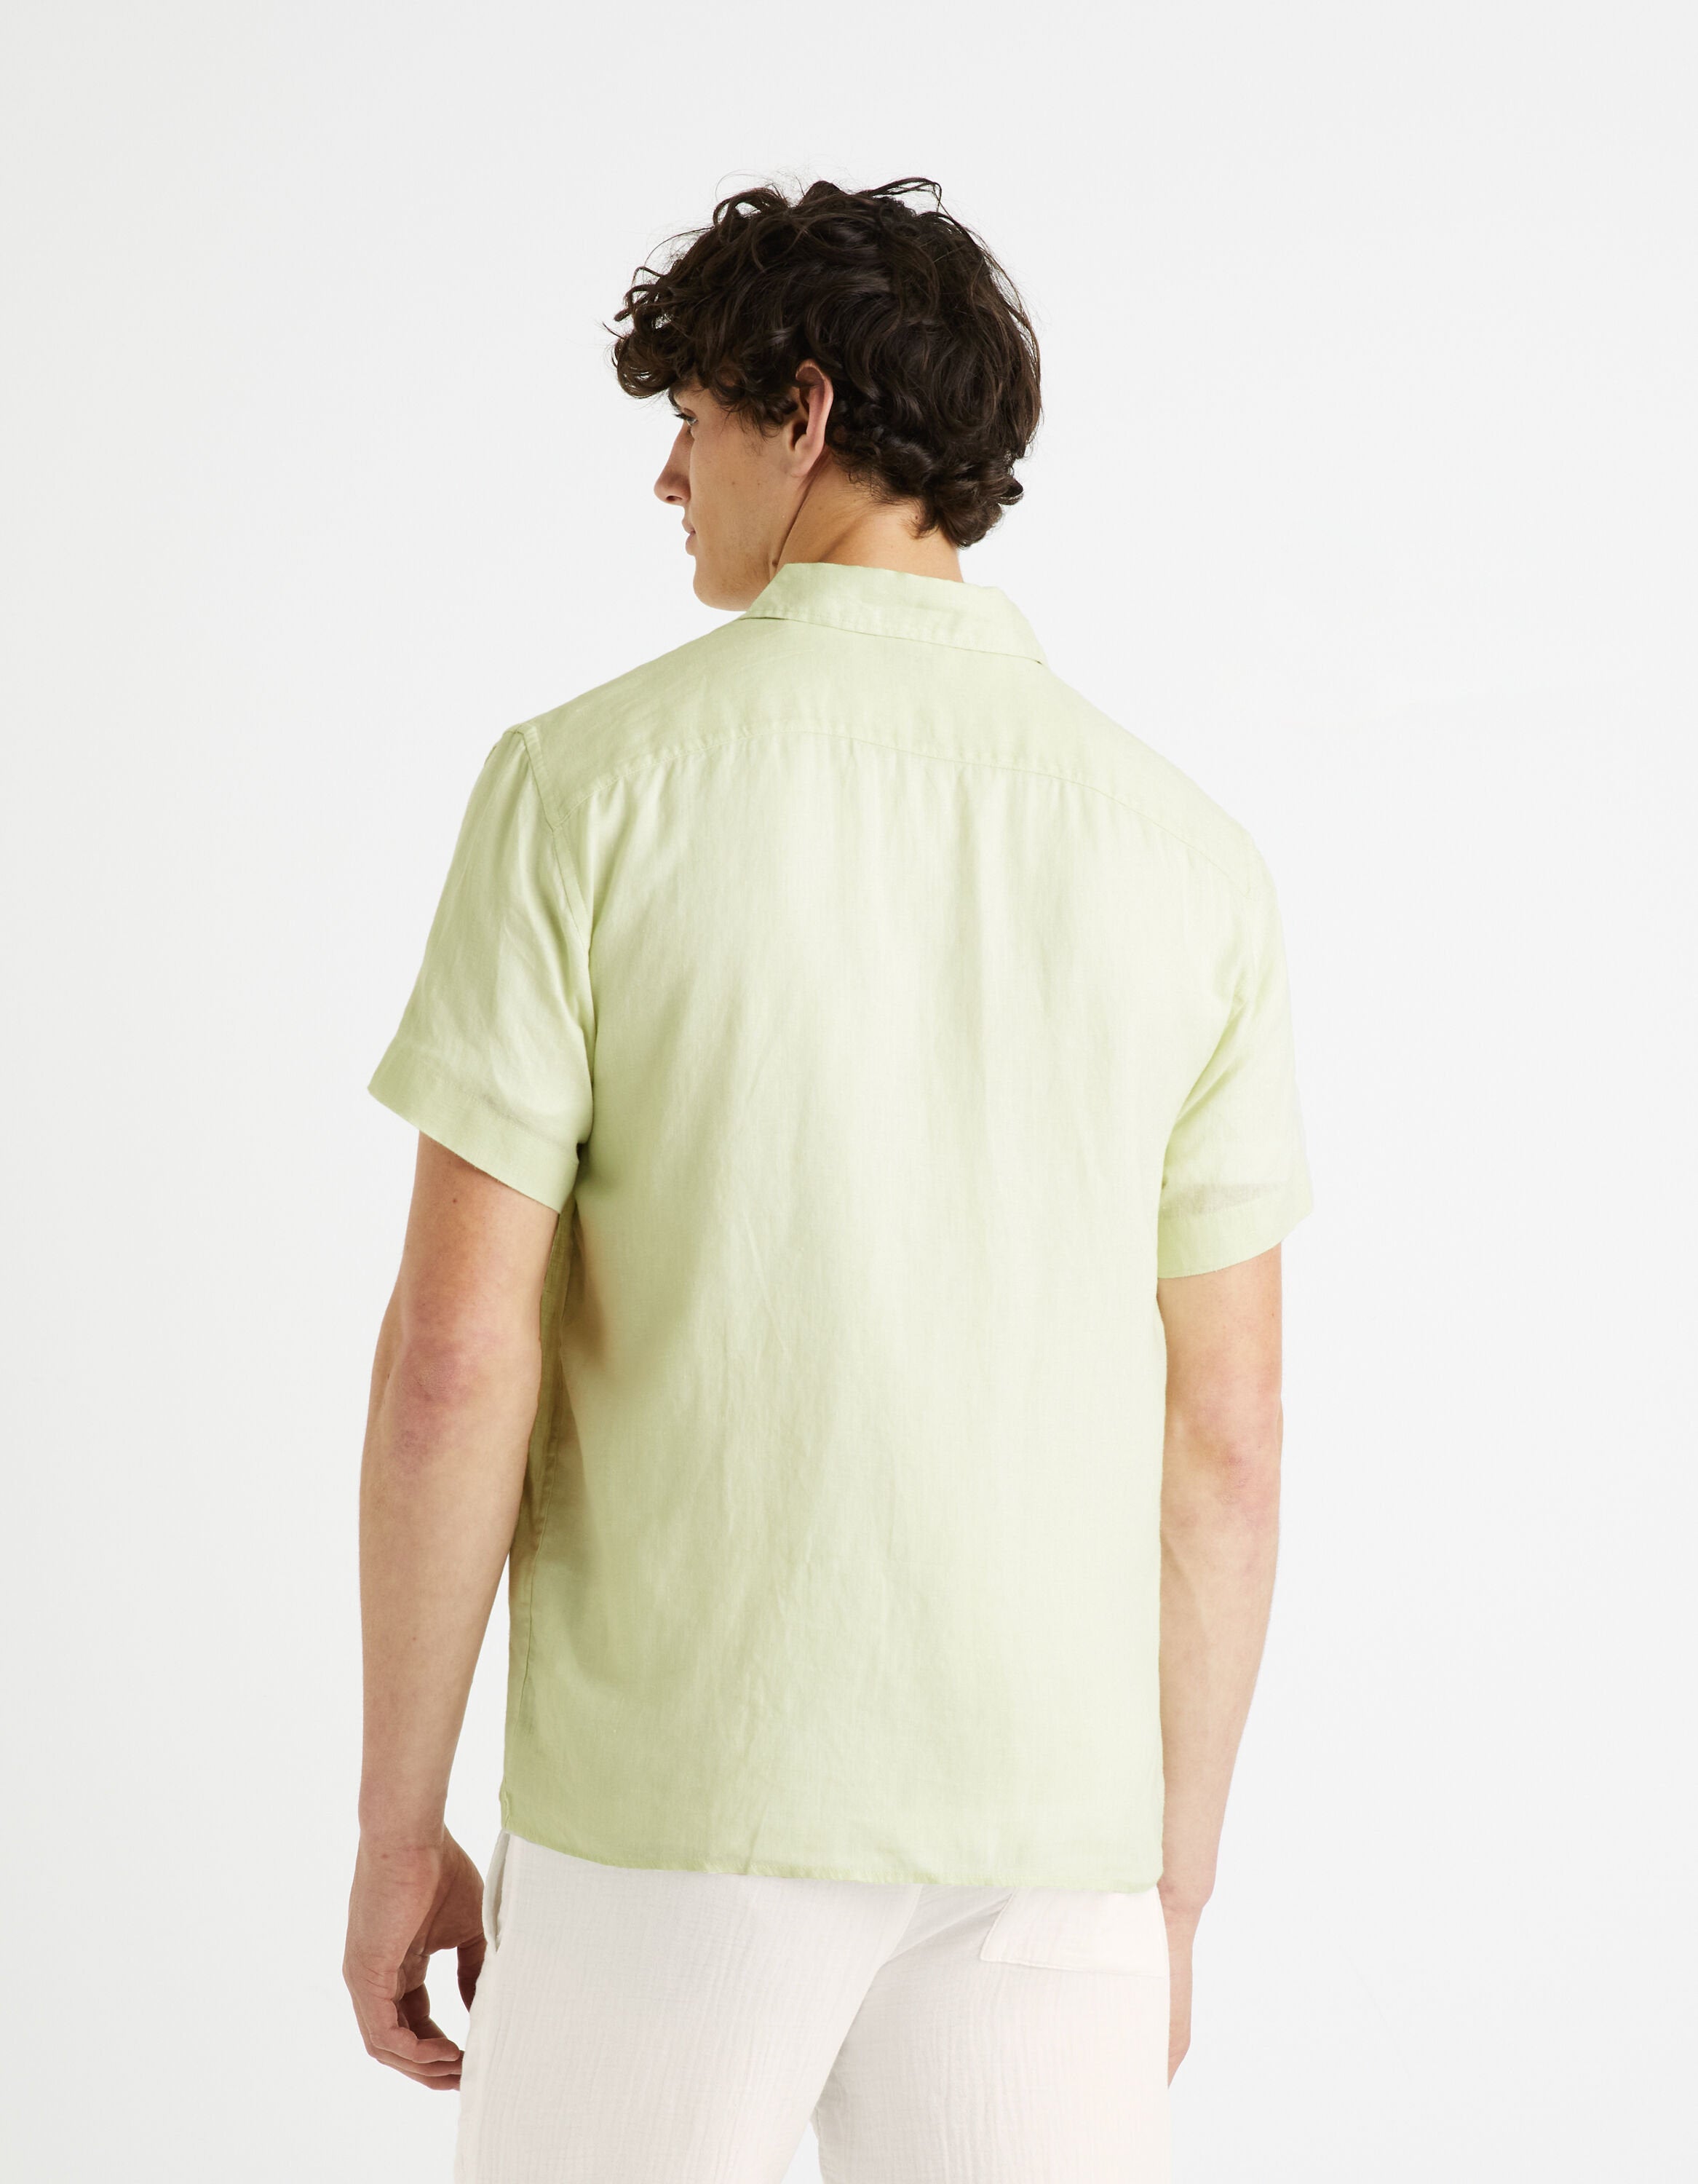 Regular Shirt 100% Linen - Light Green_DAMARLIN_LIGHT GREEN_04